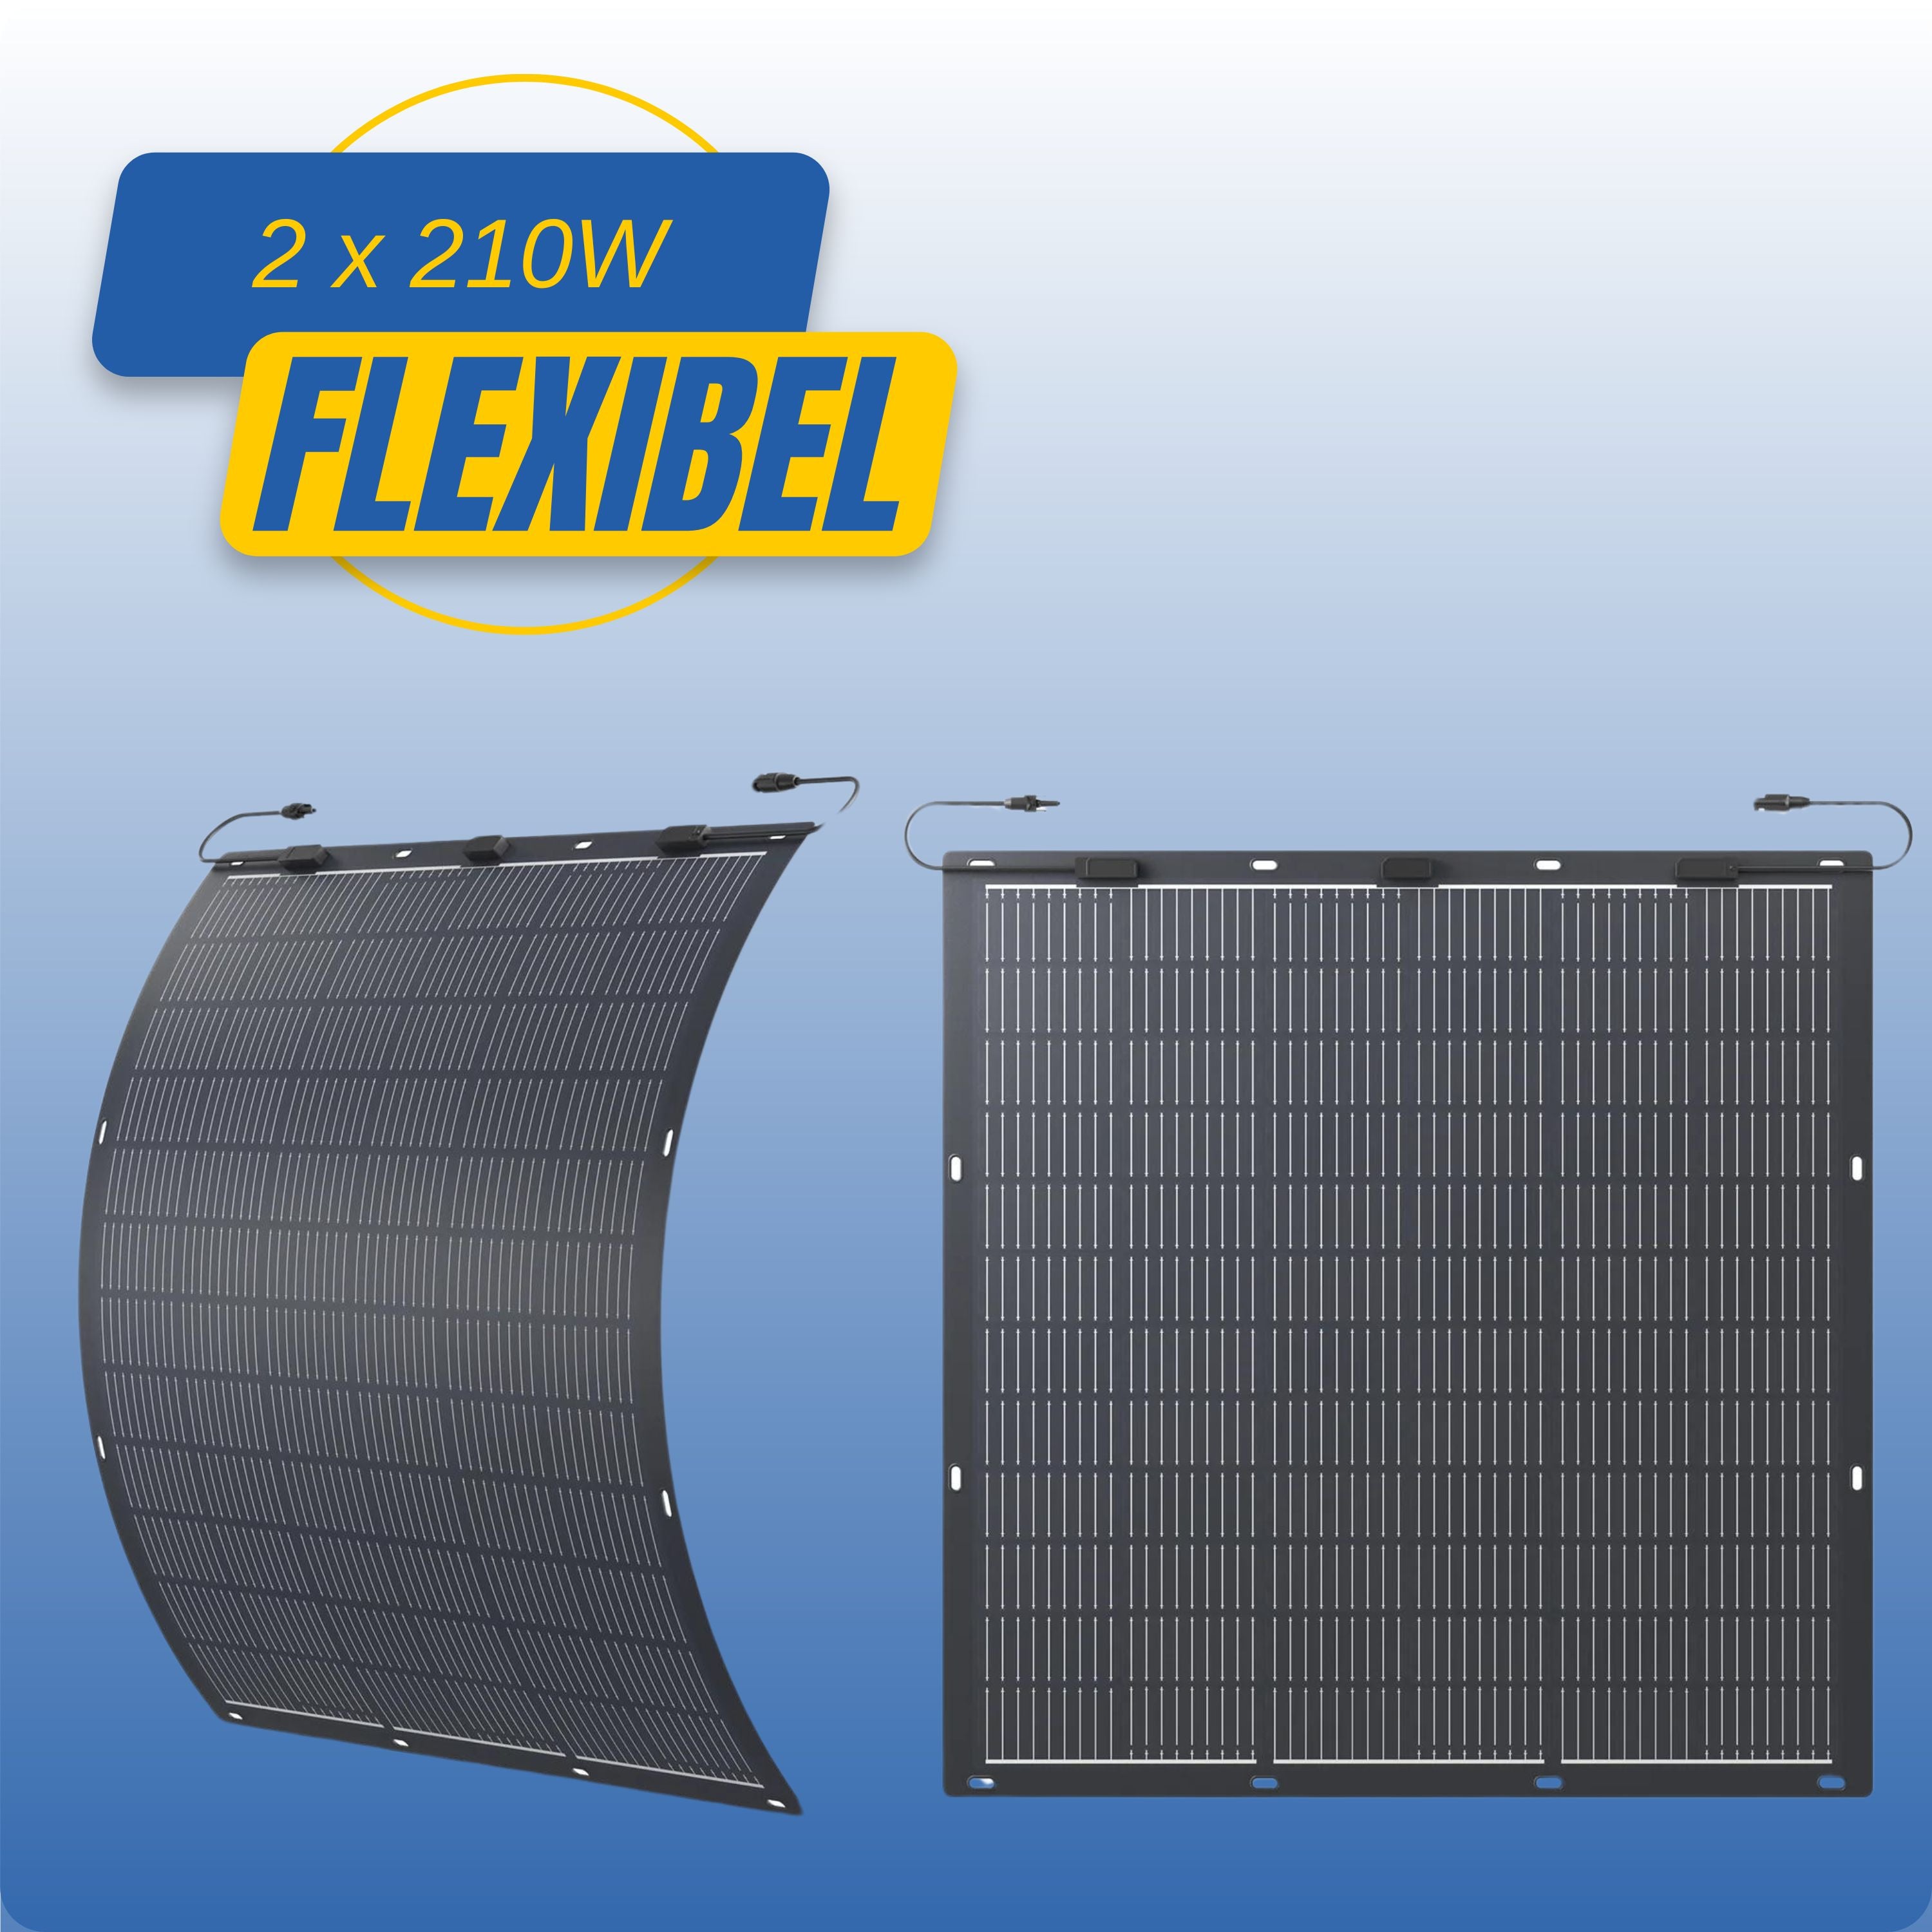 Zendure Flexible Solarpanel (2 Stück)